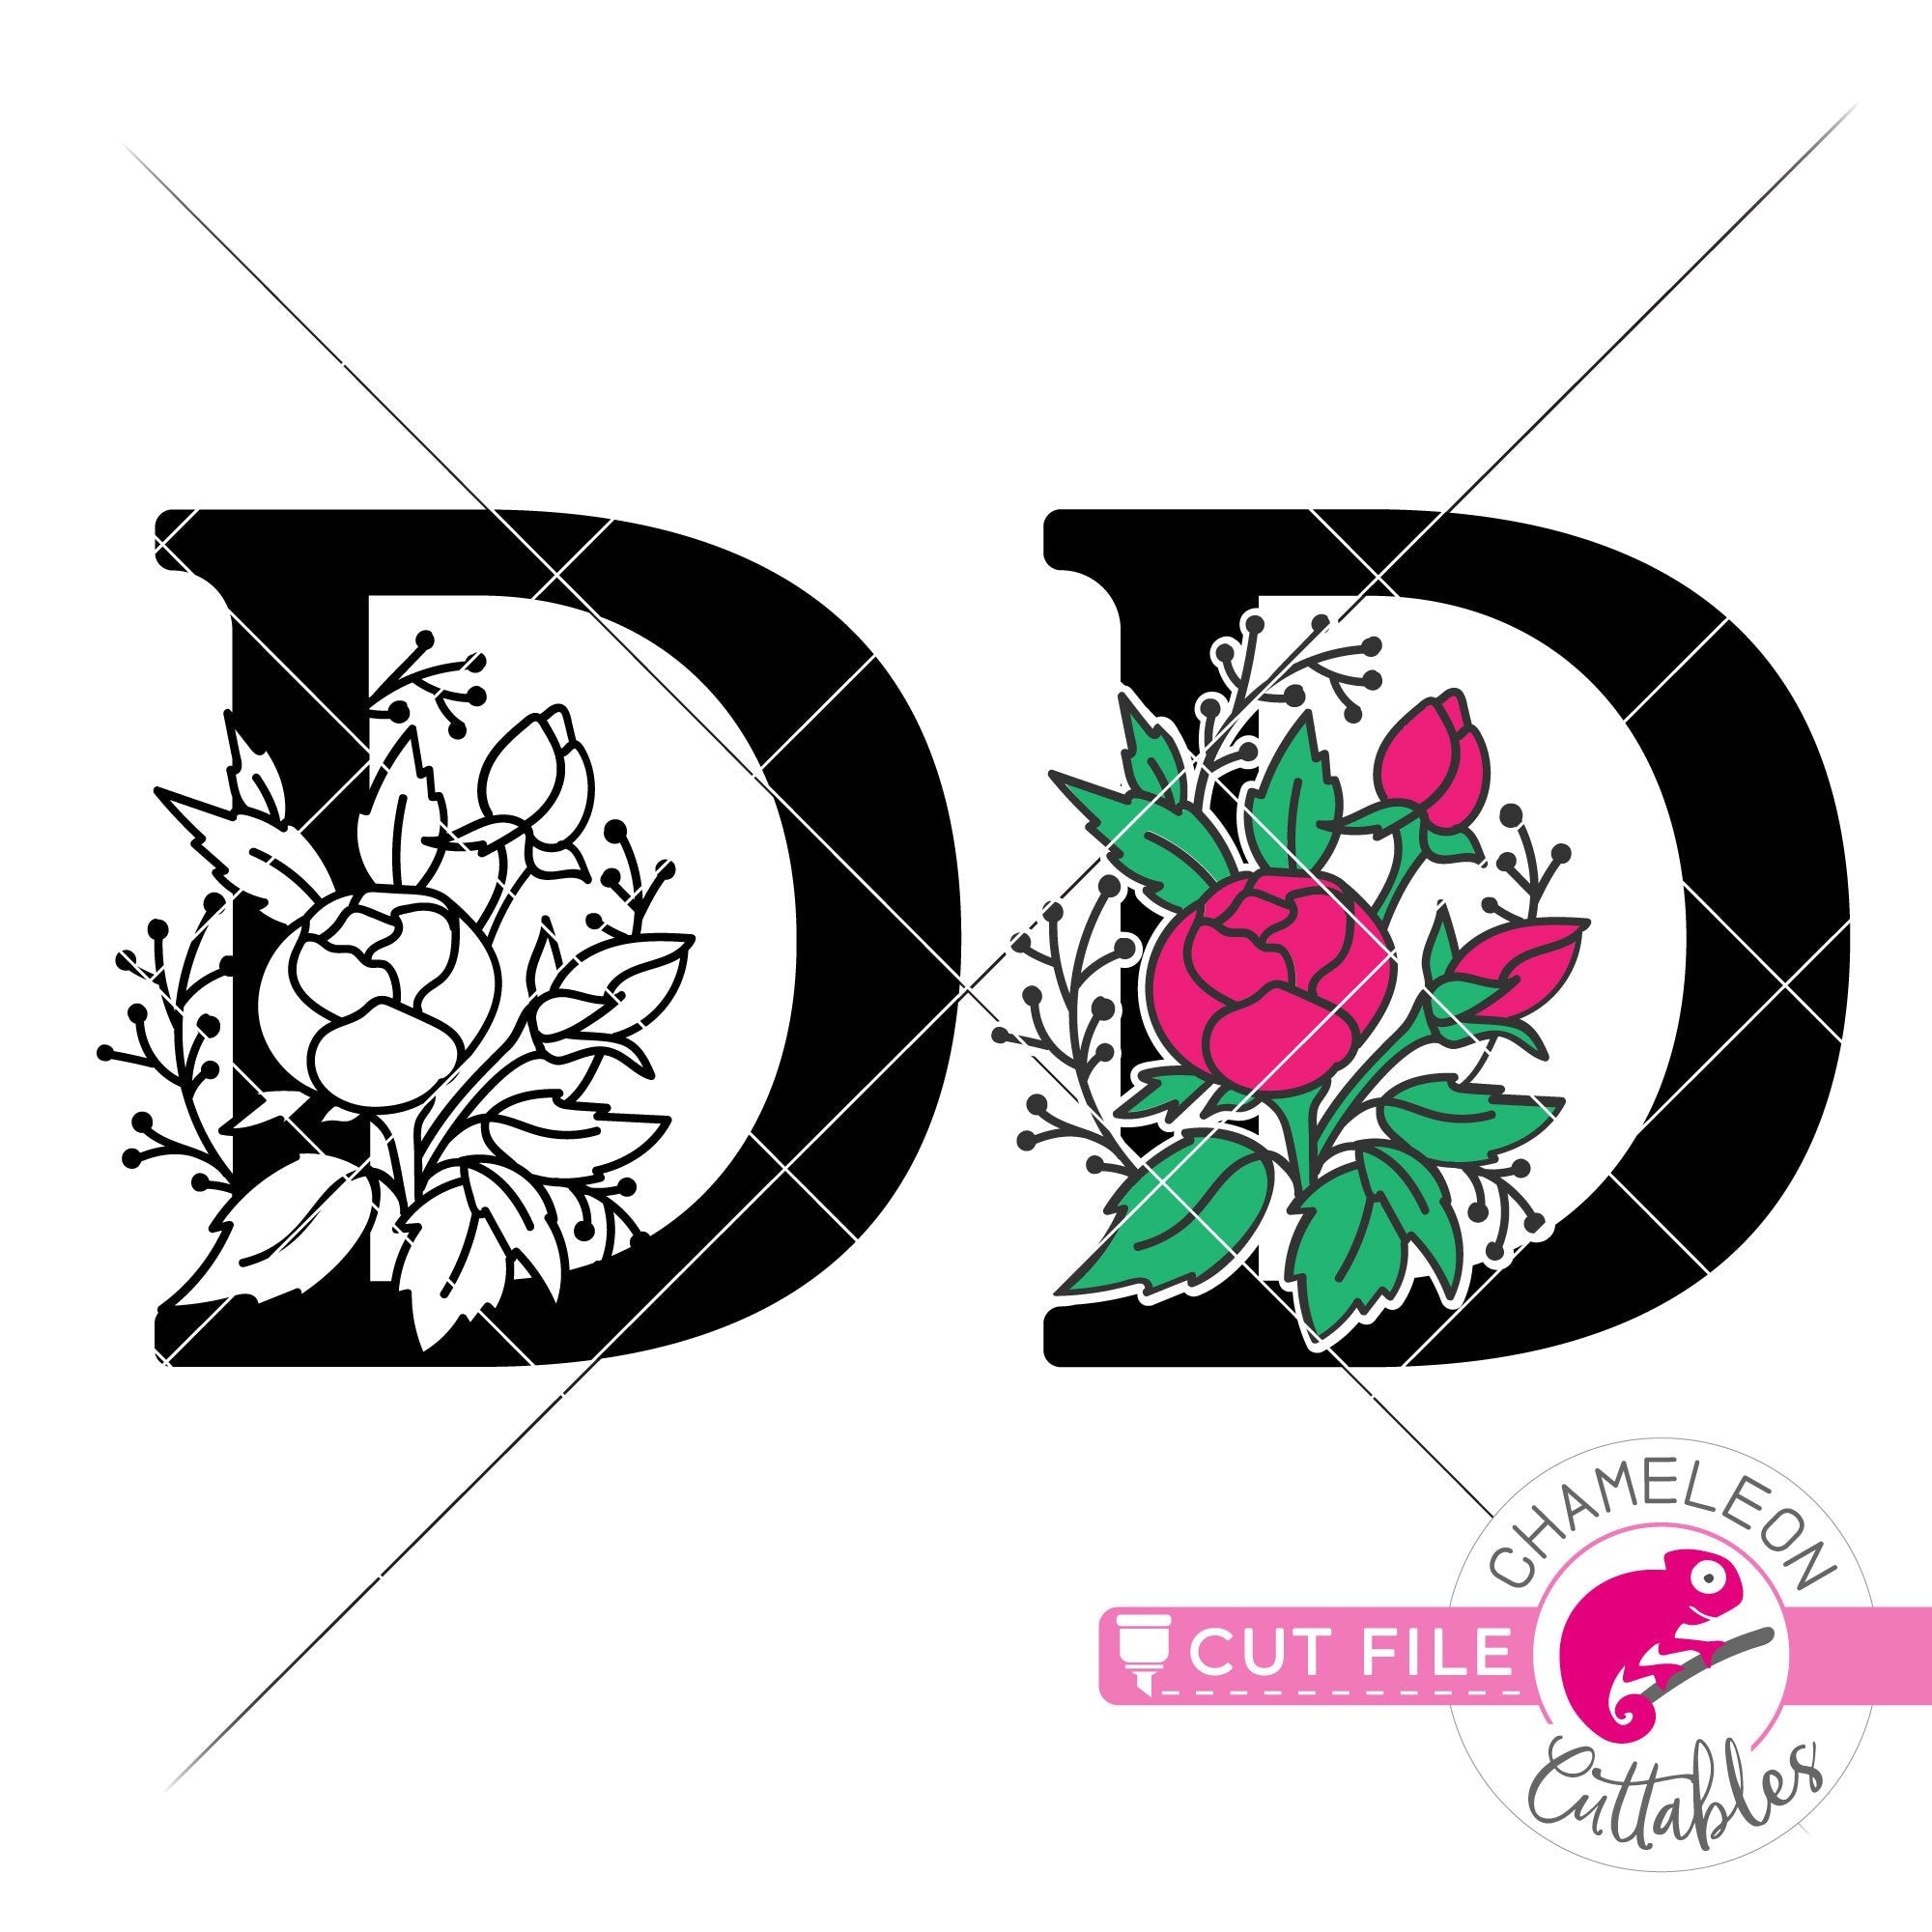 Download D Floral Monogram Letter With Flowers Svg Png Dxf Eps Jpeg Chameleon Cuttables Llc Chameleon Cuttables Llc